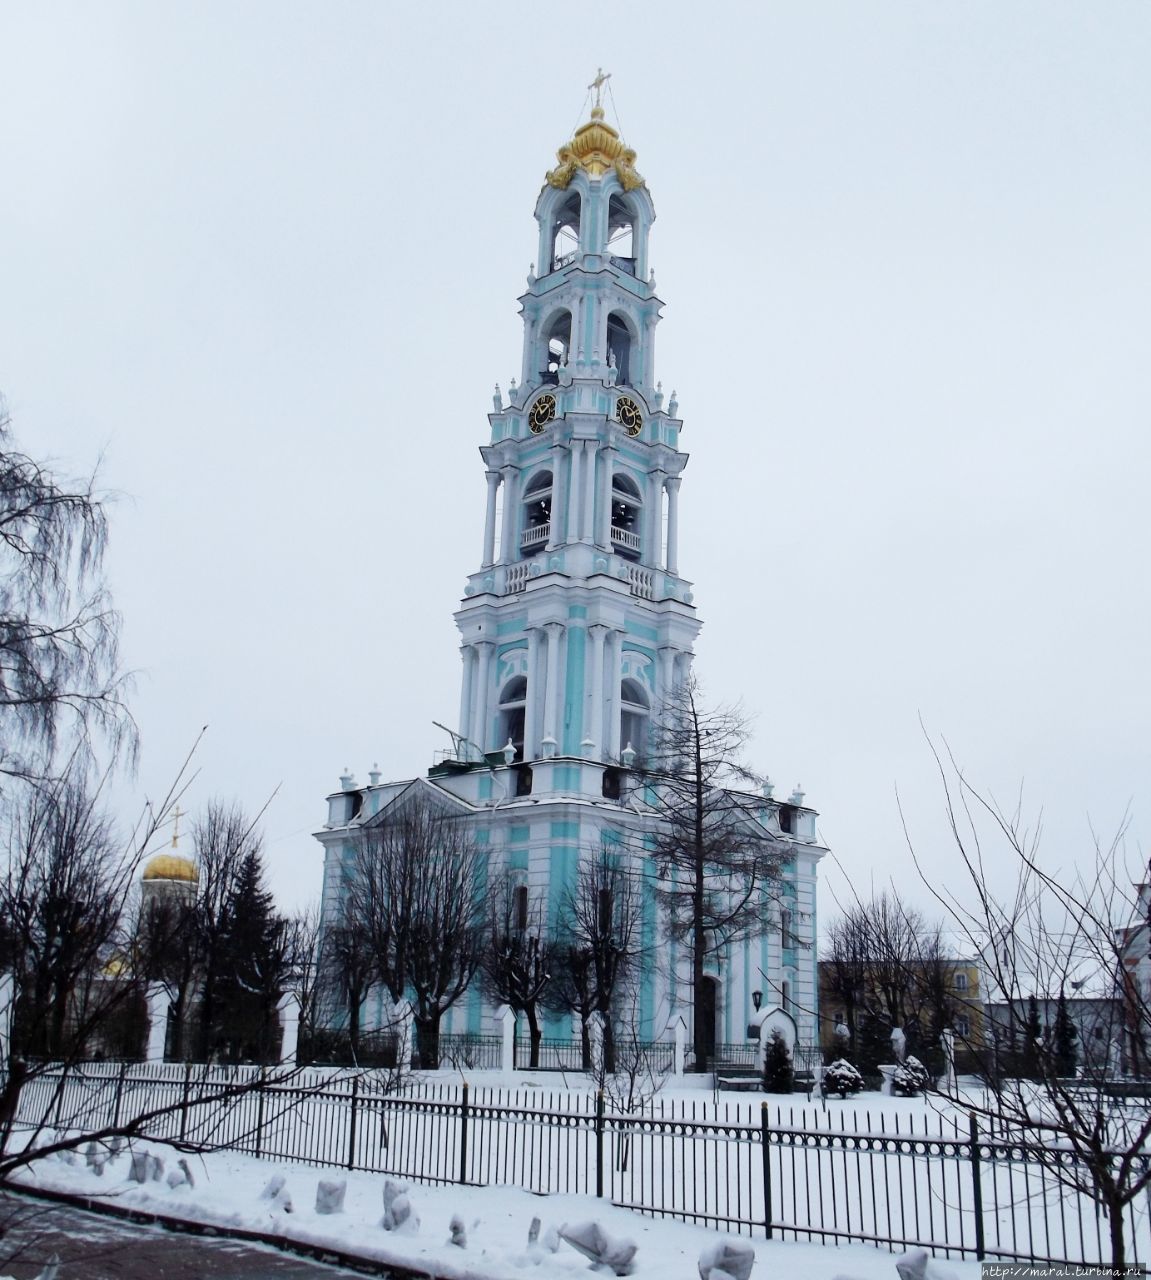 Колокольня лавры высотой 88 метров входит в десятку самых высоких колоколен России Сергиев Посад, Россия